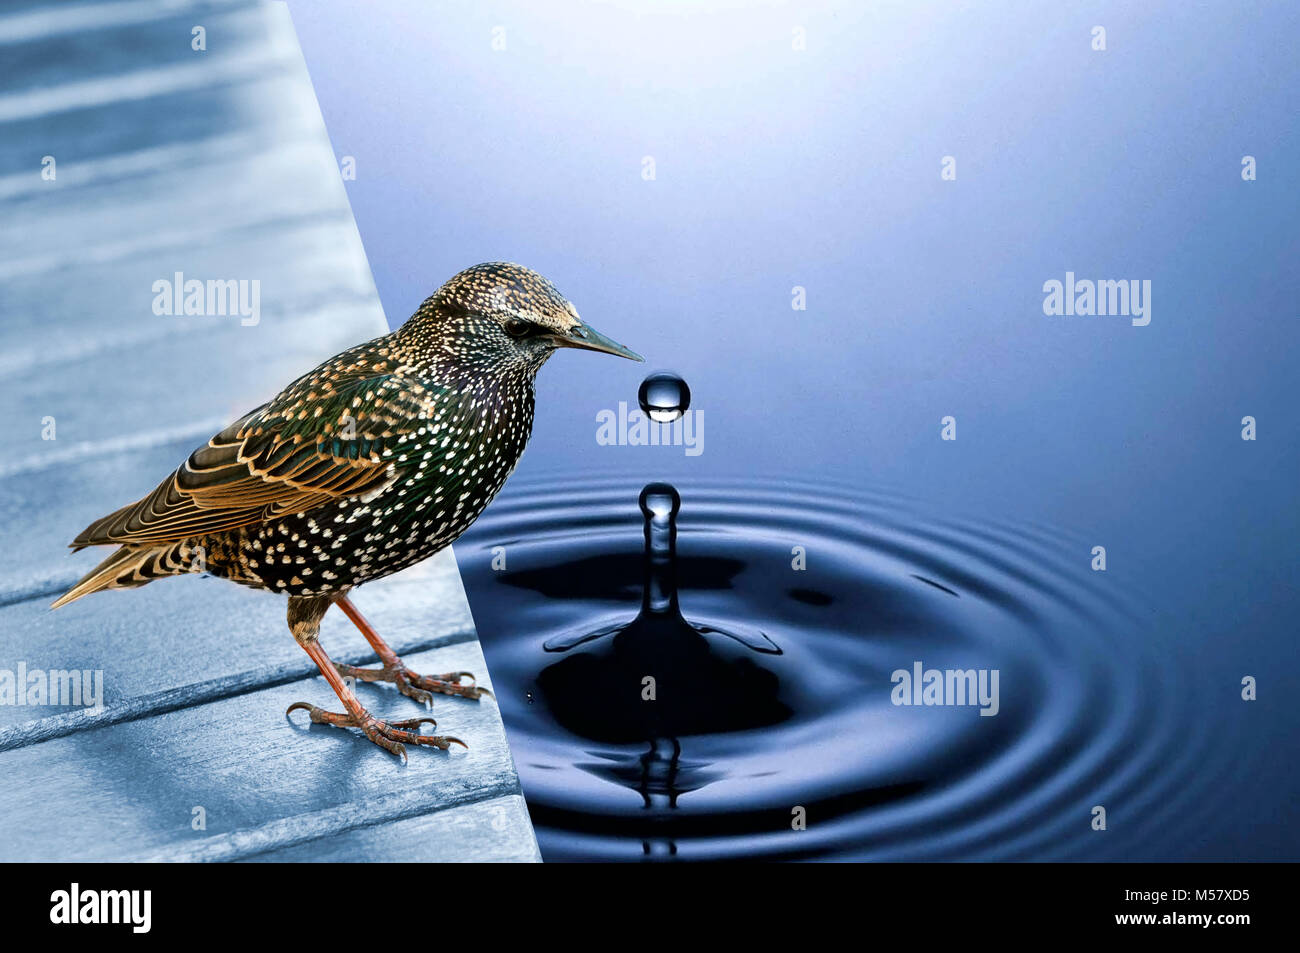 La composition de la photo d'un oiseau par blue water prise d'une goutte d'eau b Banque D'Images